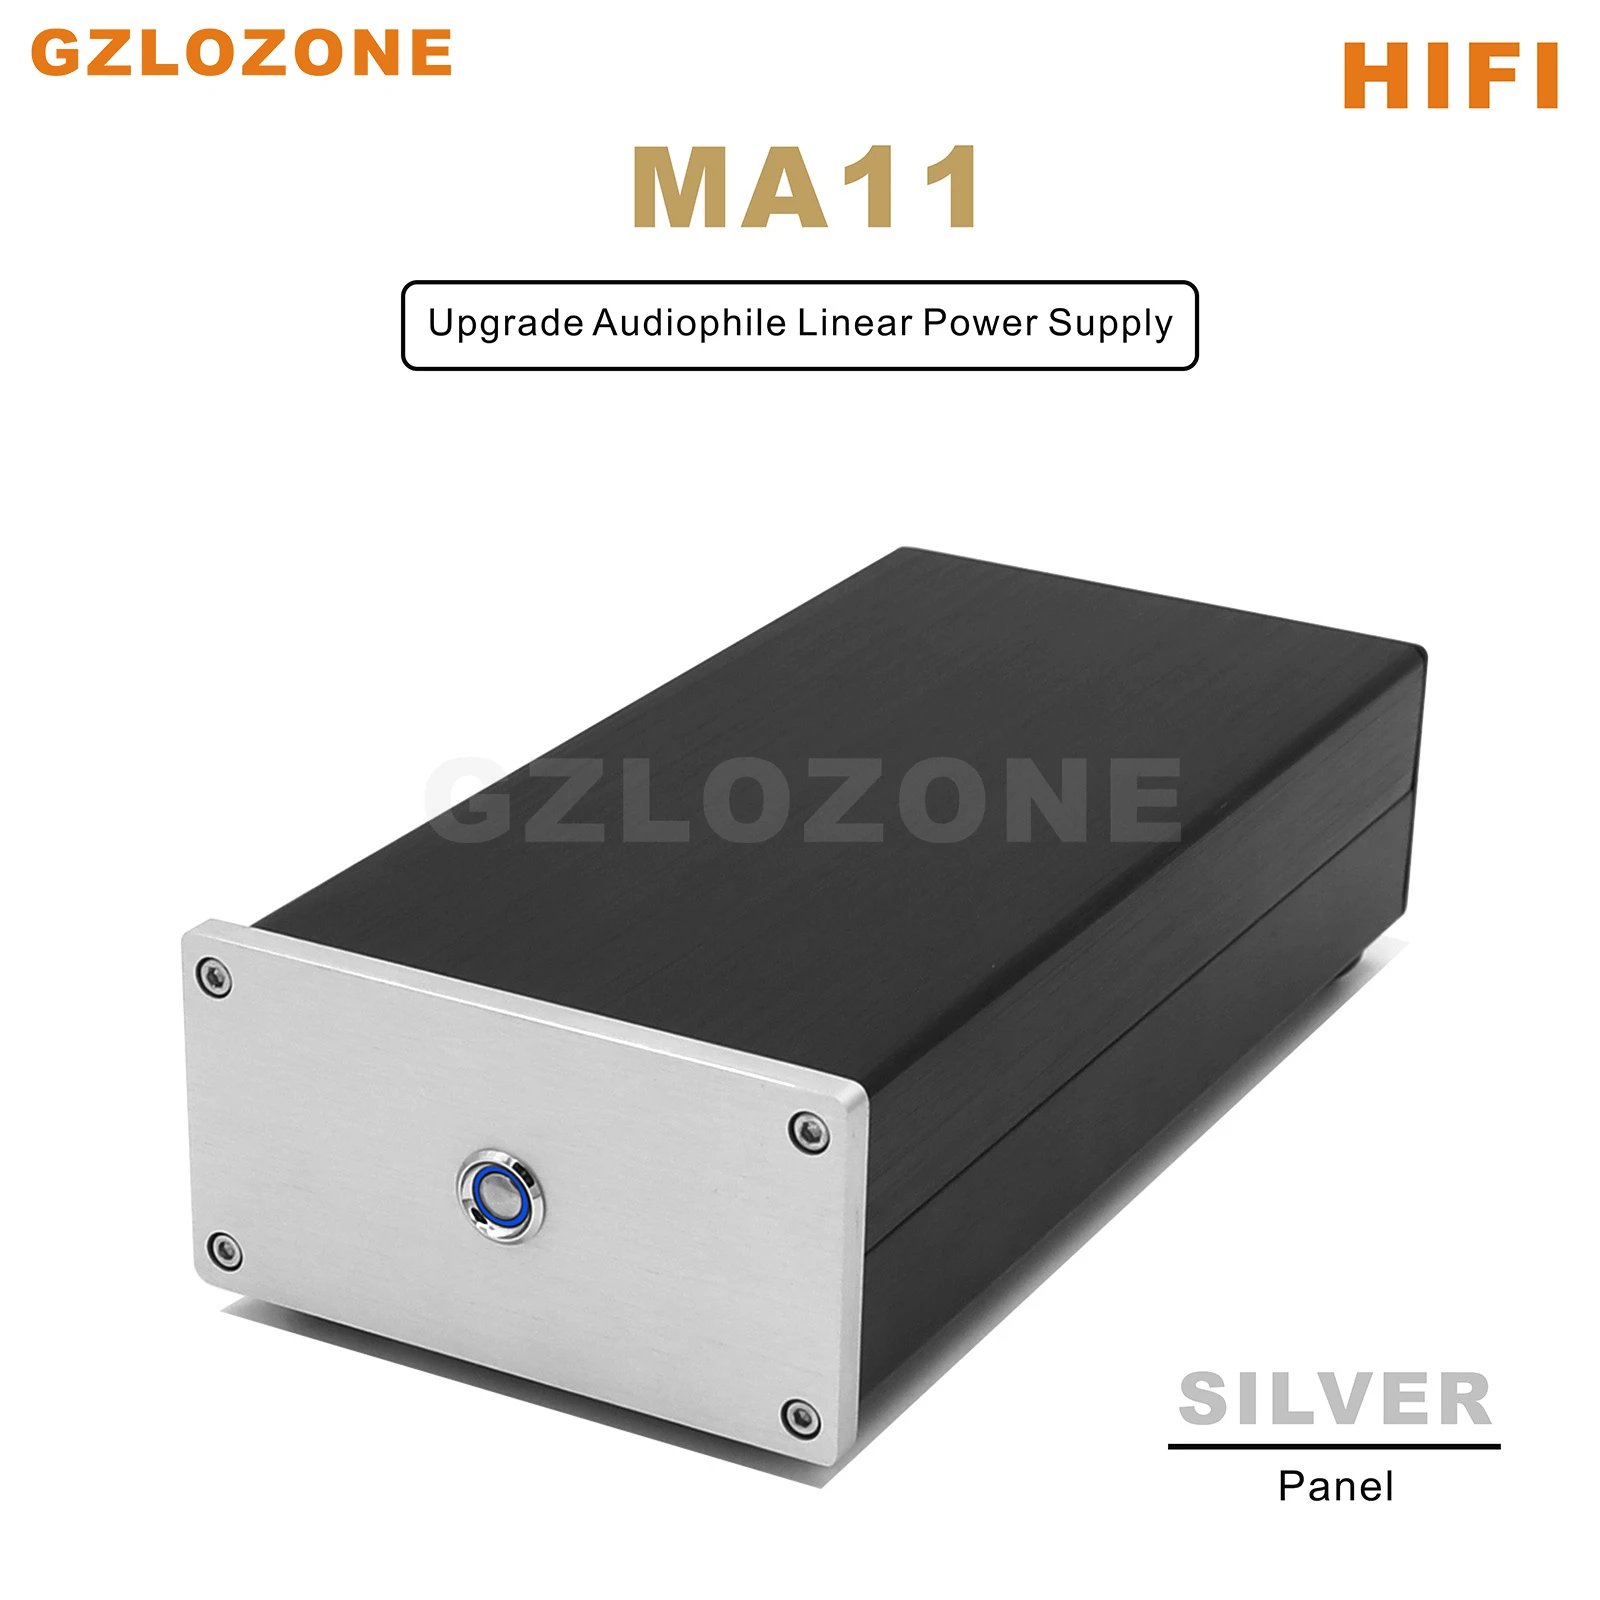 MA11 Hi-Fi малошумящий Аудиофильский линейный источник питания мощностью 25 Вт постоянного тока постоянного тока 5 В/6 В/9 В/12 В/15 В/18 В/19 В (опционально)0